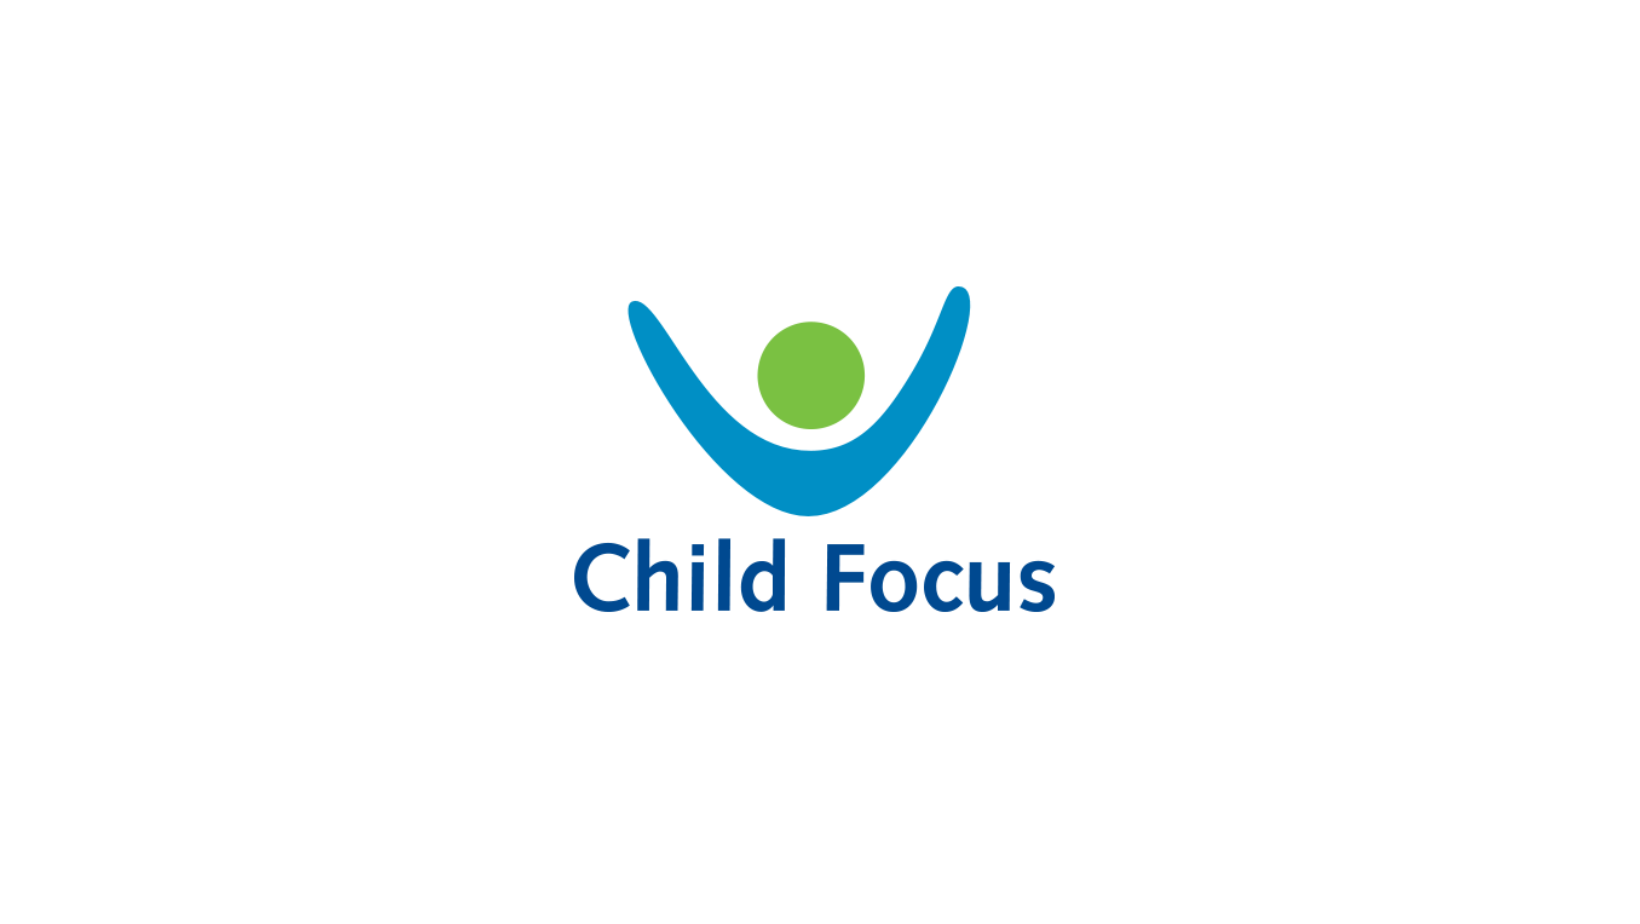 Logo Child Focus